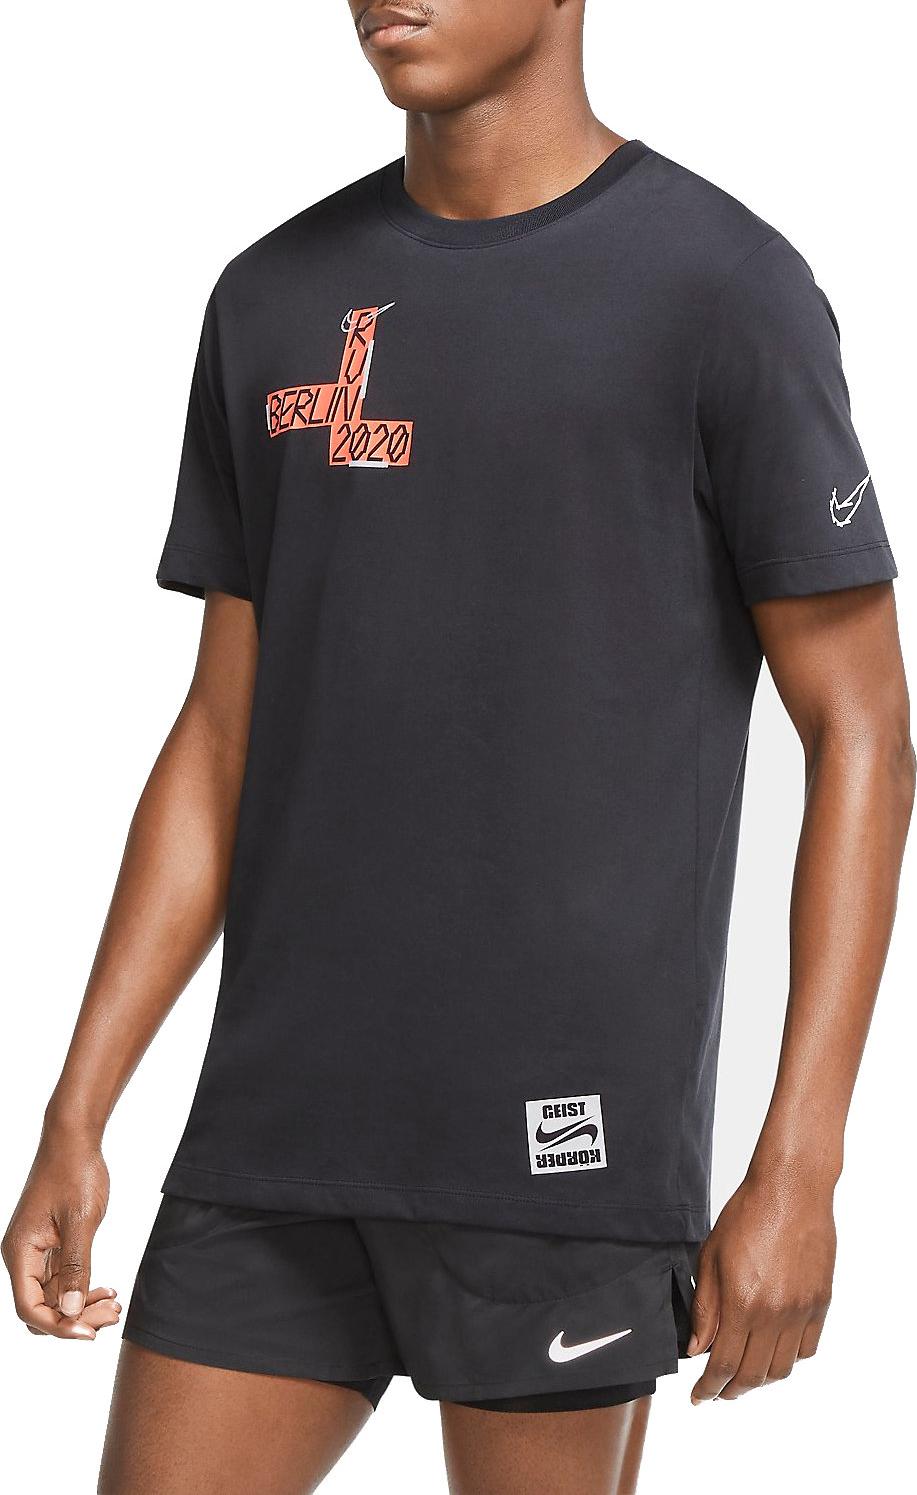 Pánské bežecké tričko s krátkým rukávem Nike Dri-FIT Berlin